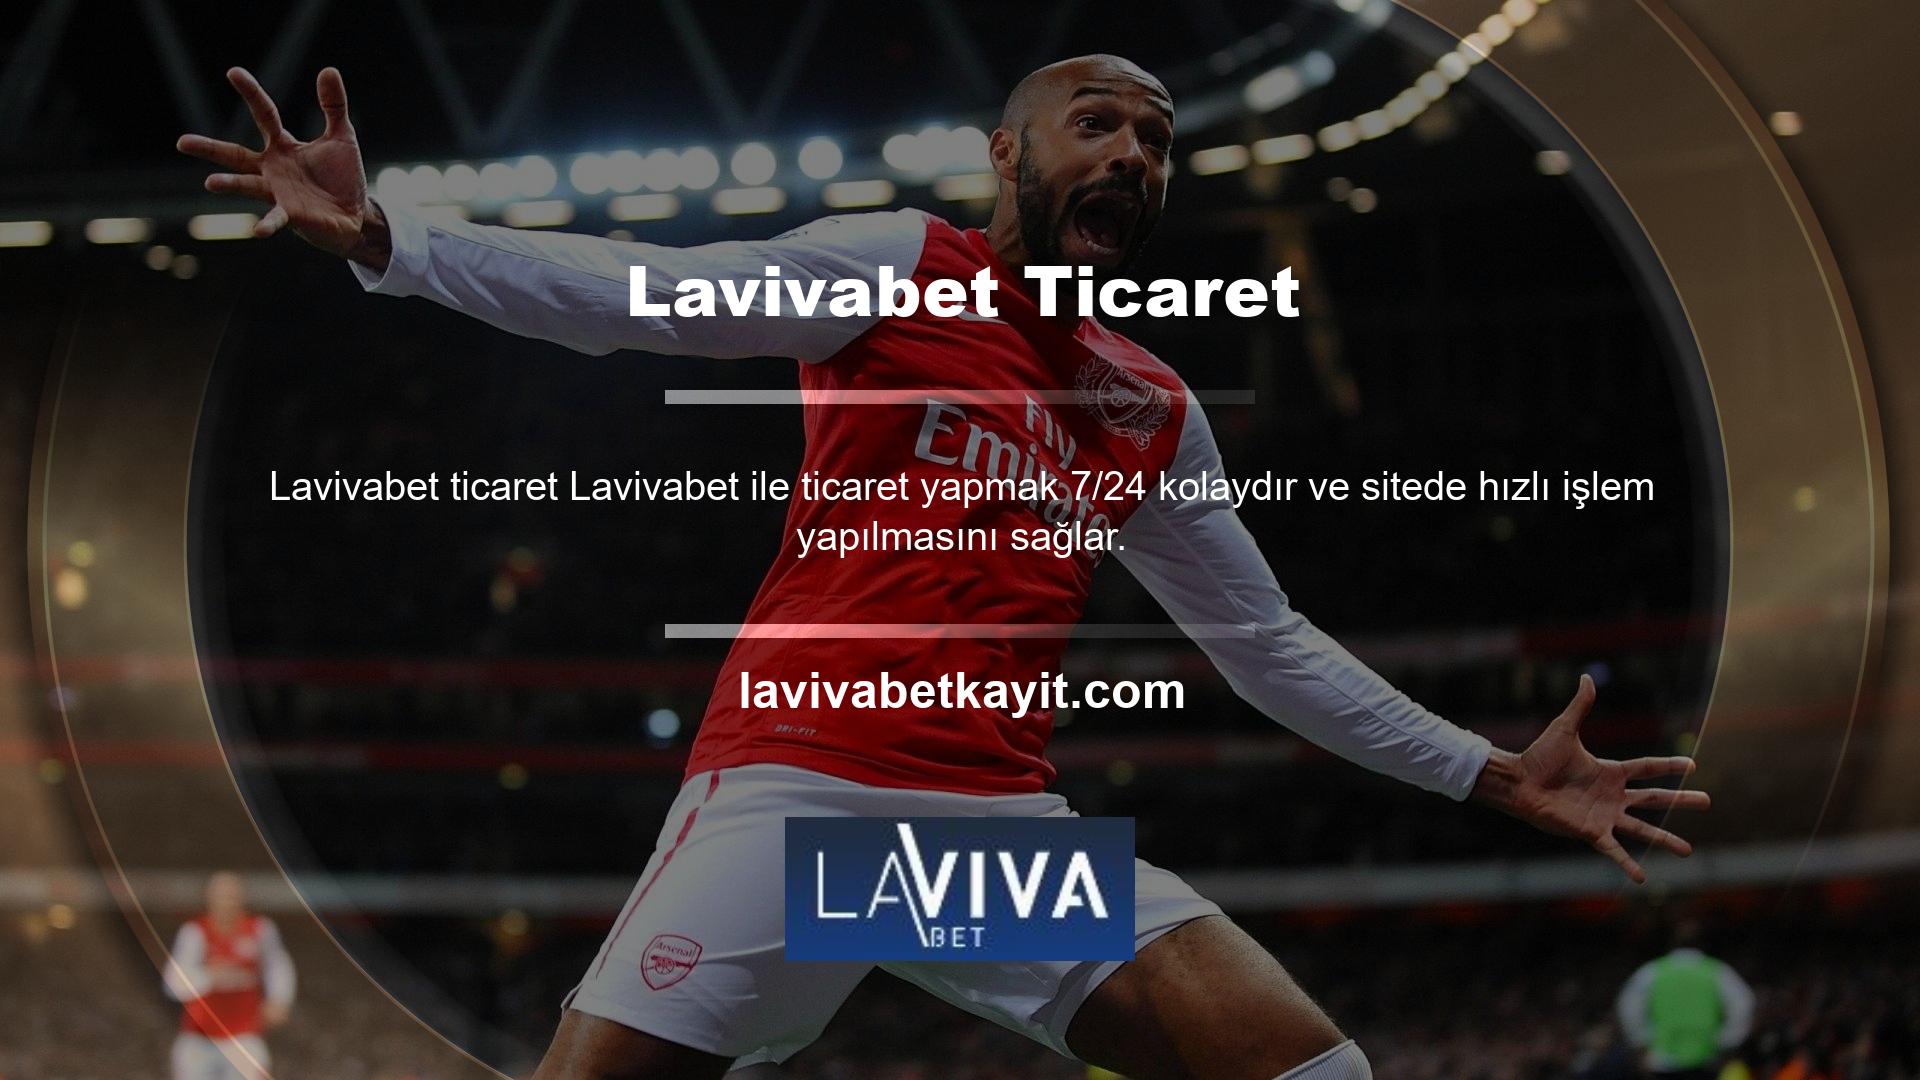 Lavivabet Twitter'ı da yapılan işlemler için para yatırma olanağı sunuyor